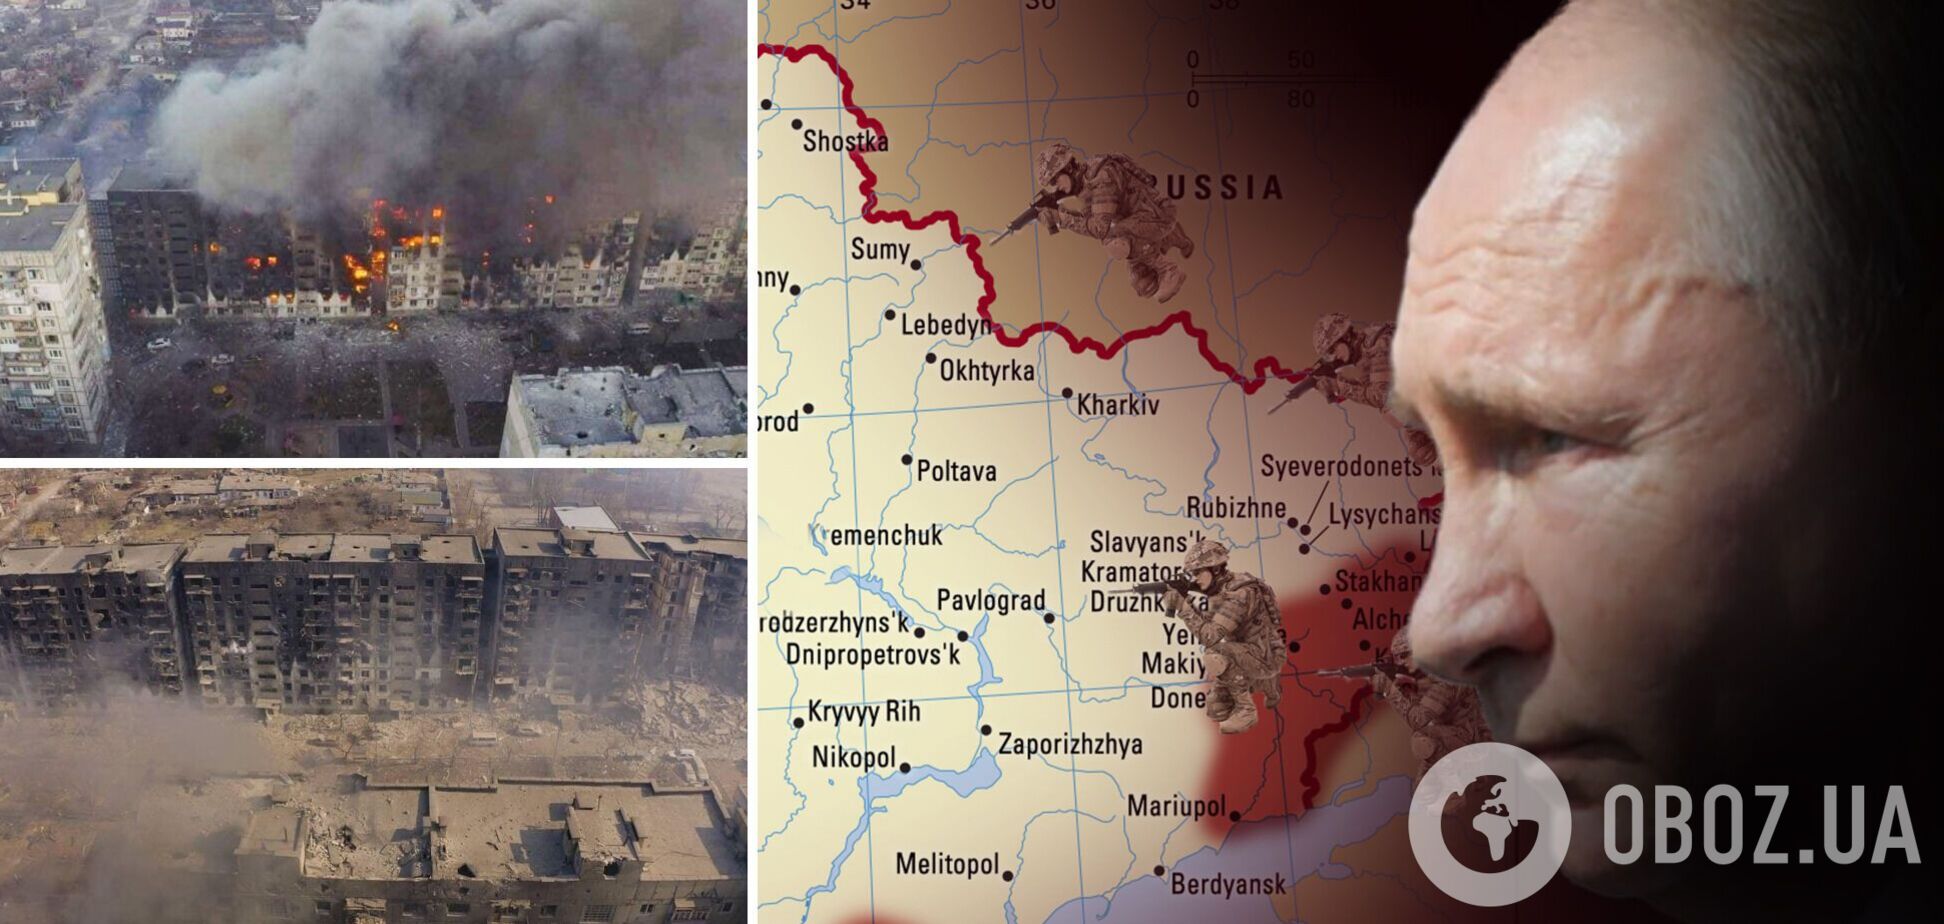 Стратегические оценки в преддверии битвы за Донбасс: мы побеждаем, но цена высока